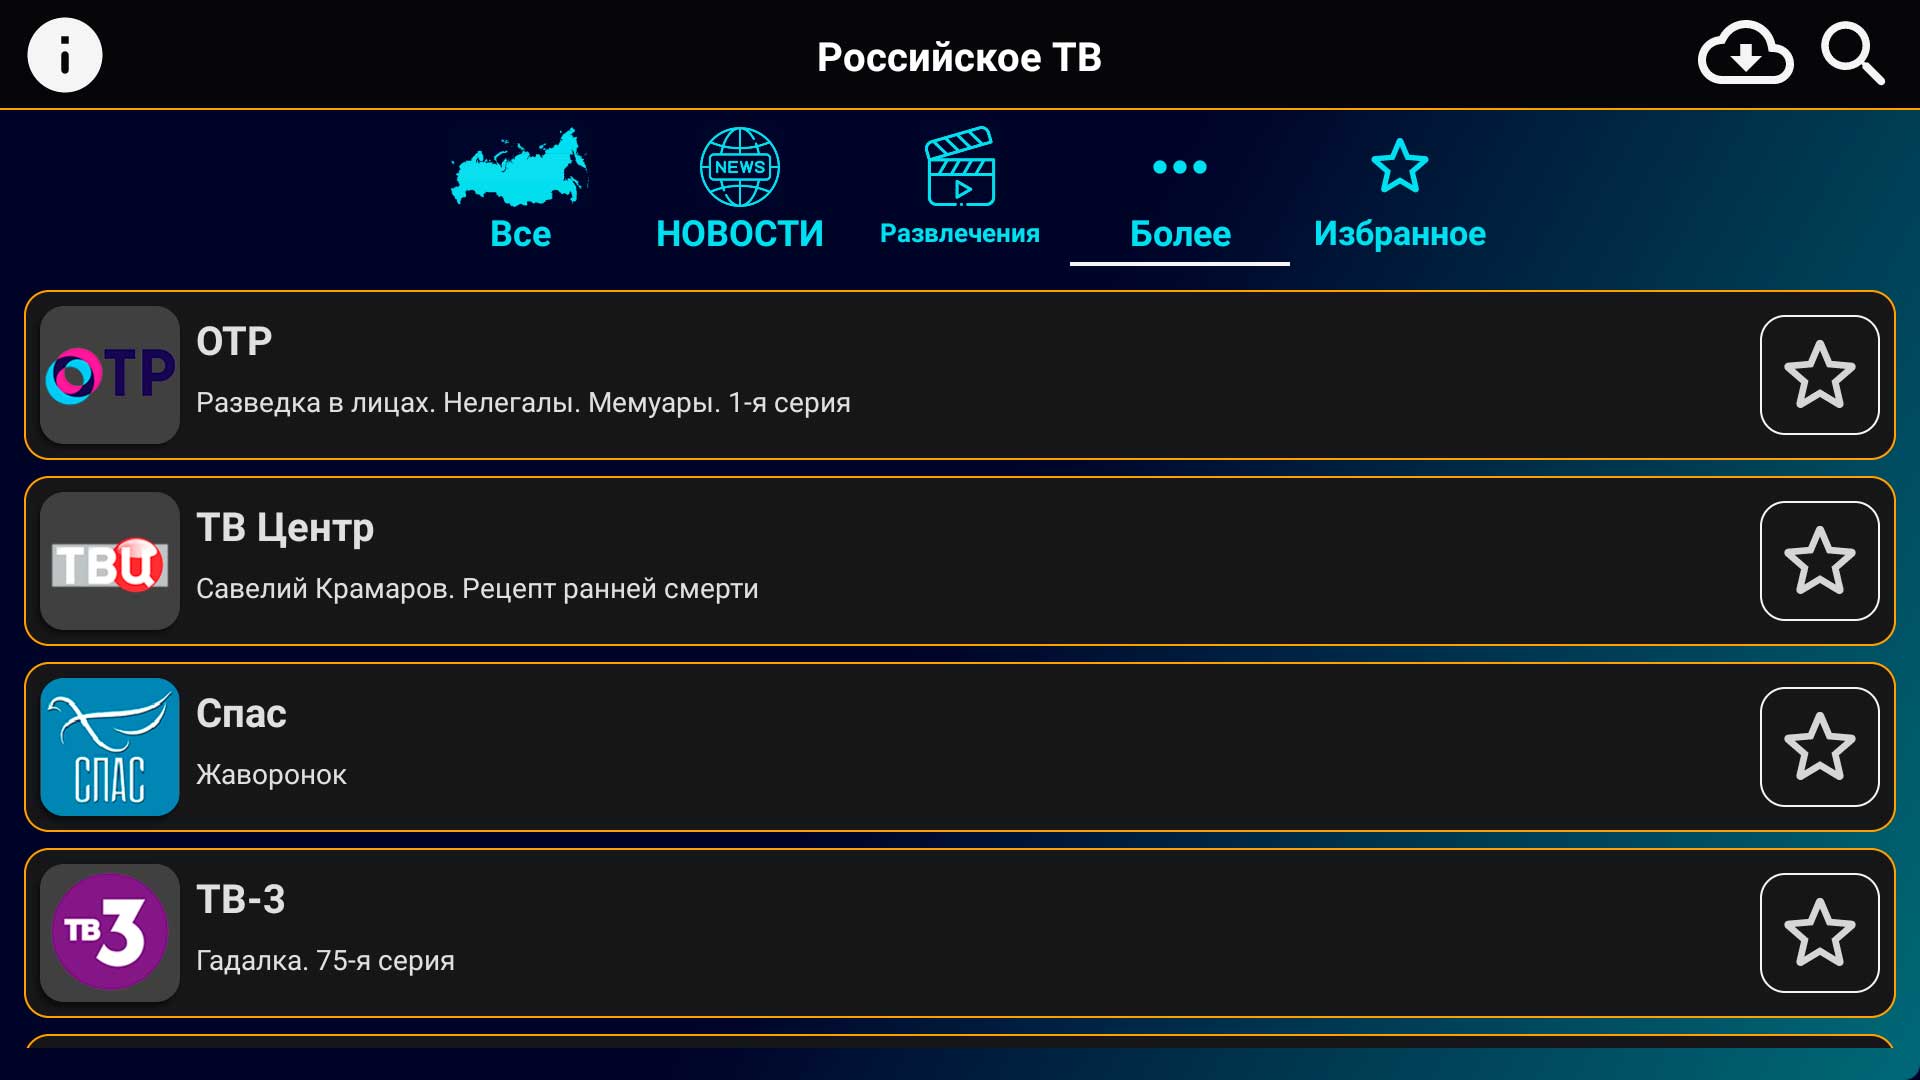 Российские каналы андроид. Российское ТВ APK. Русское ТВ Android. Андроид инфо.